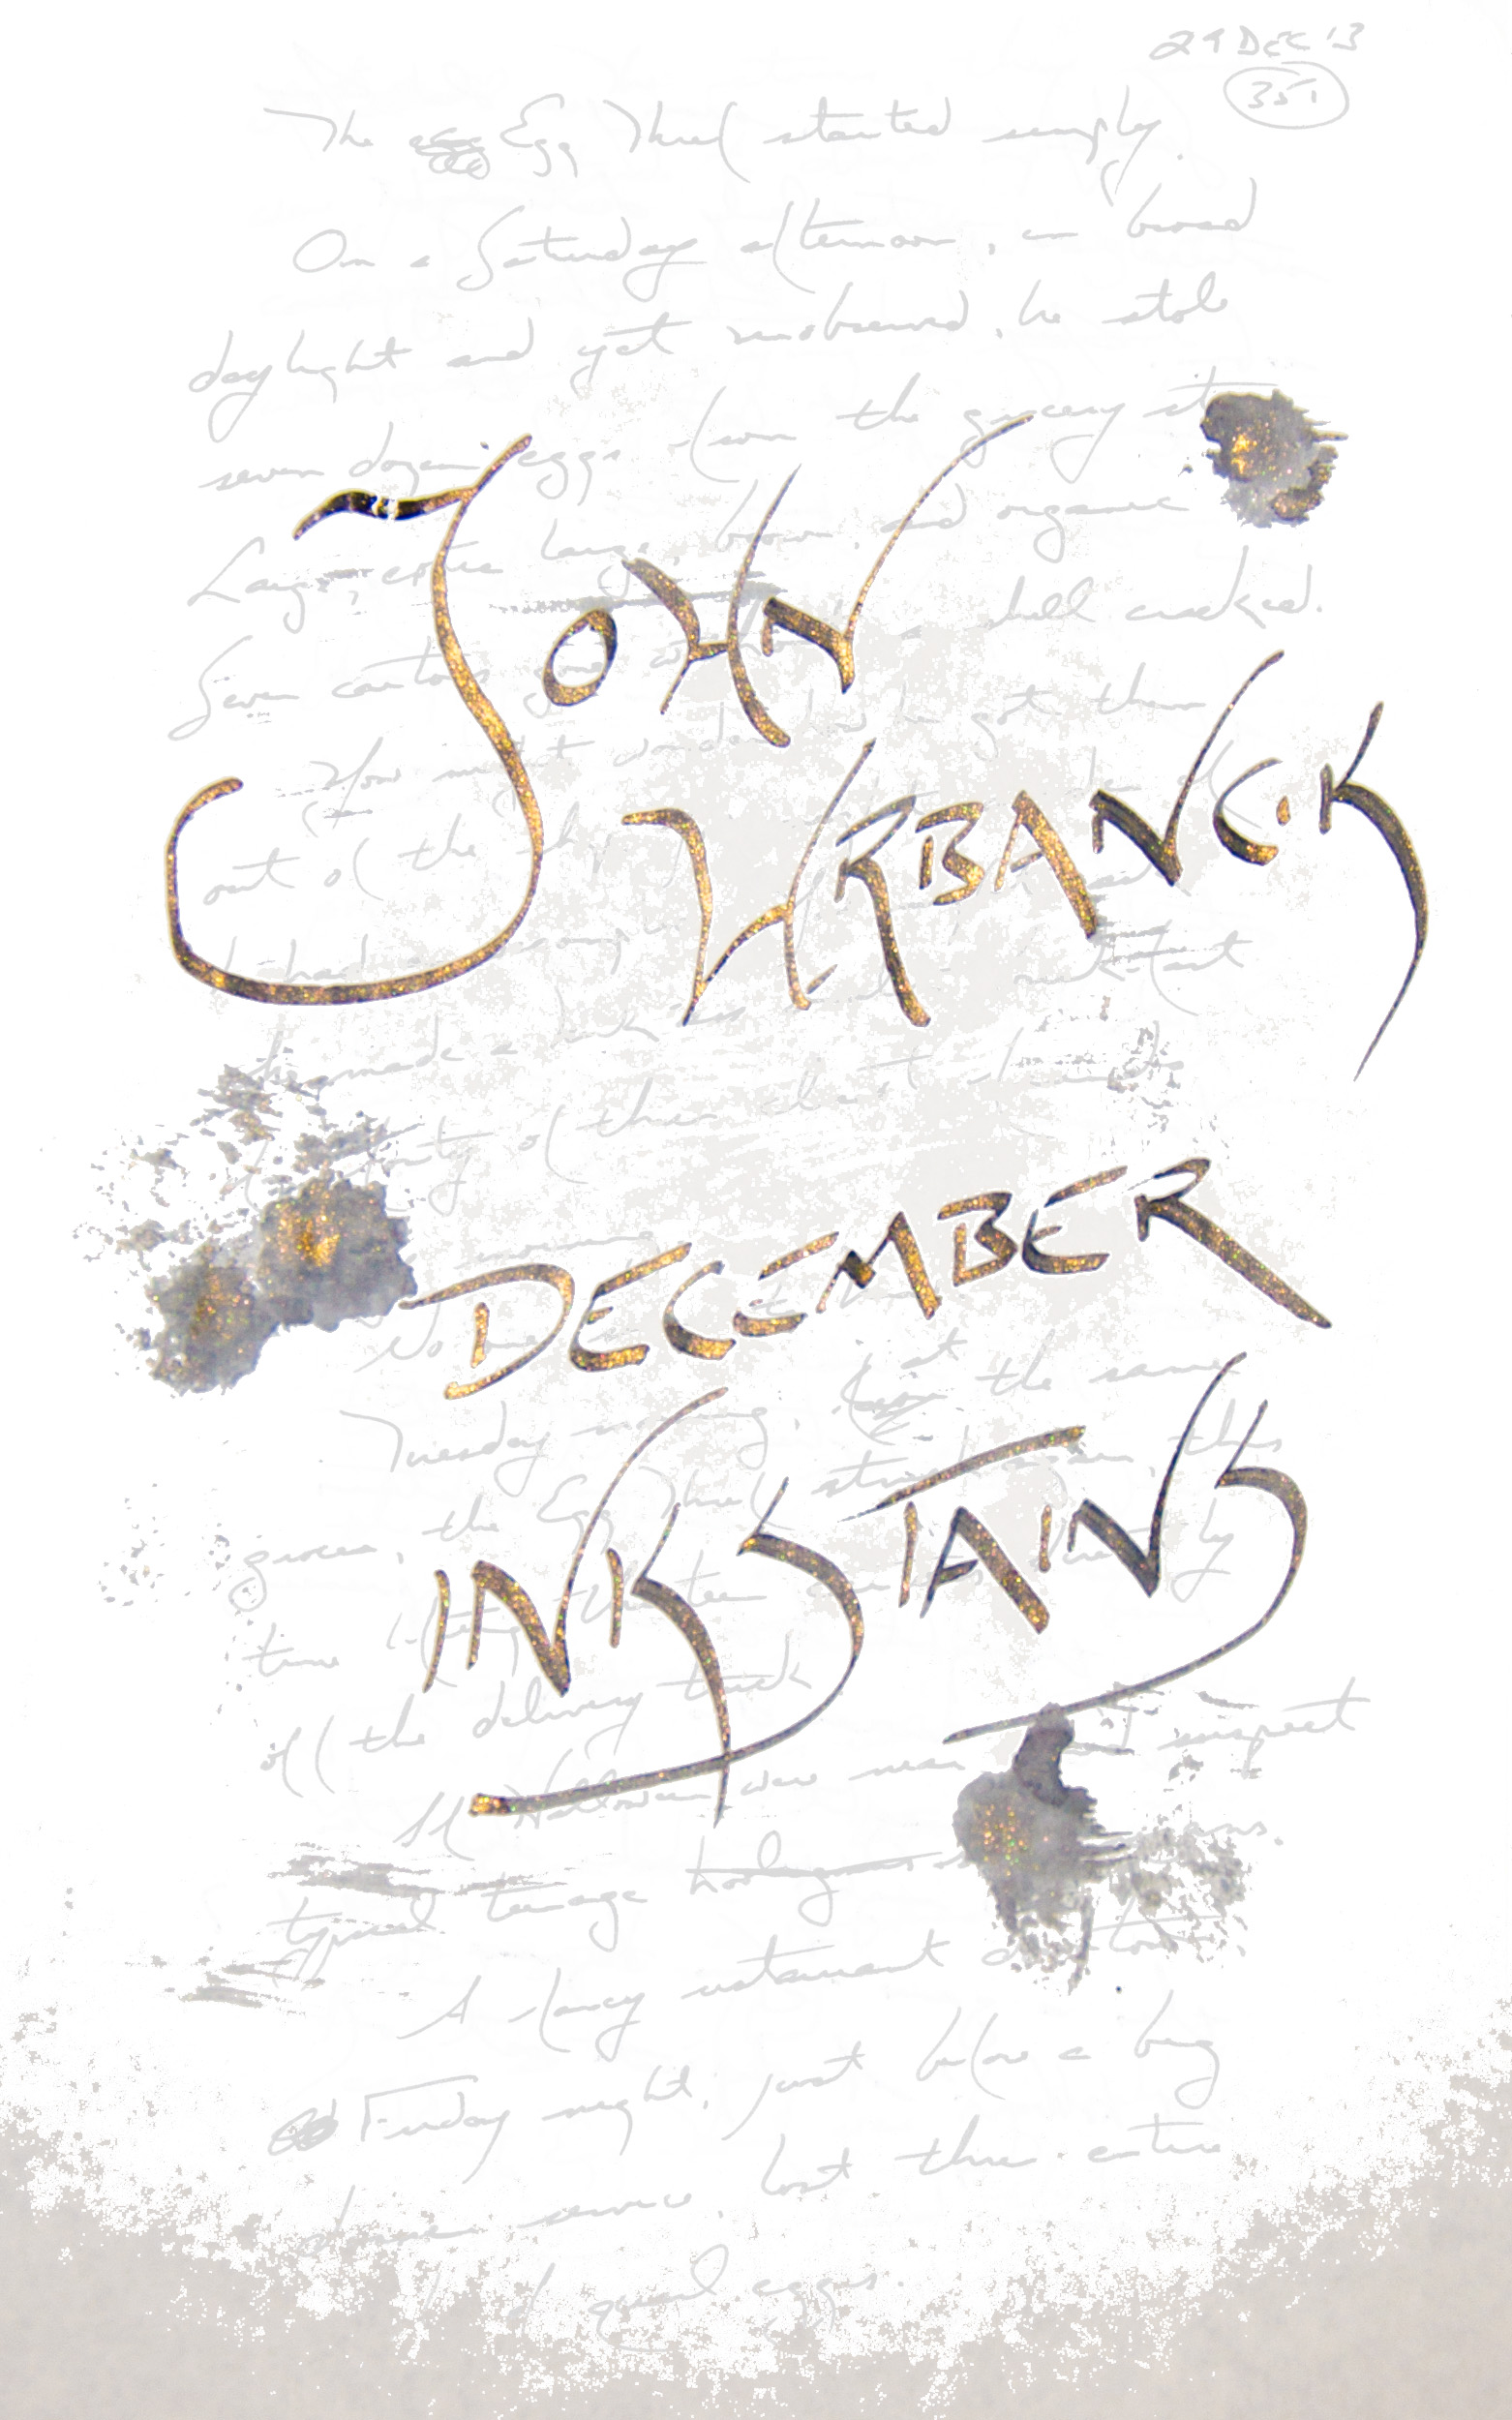 InkStains December